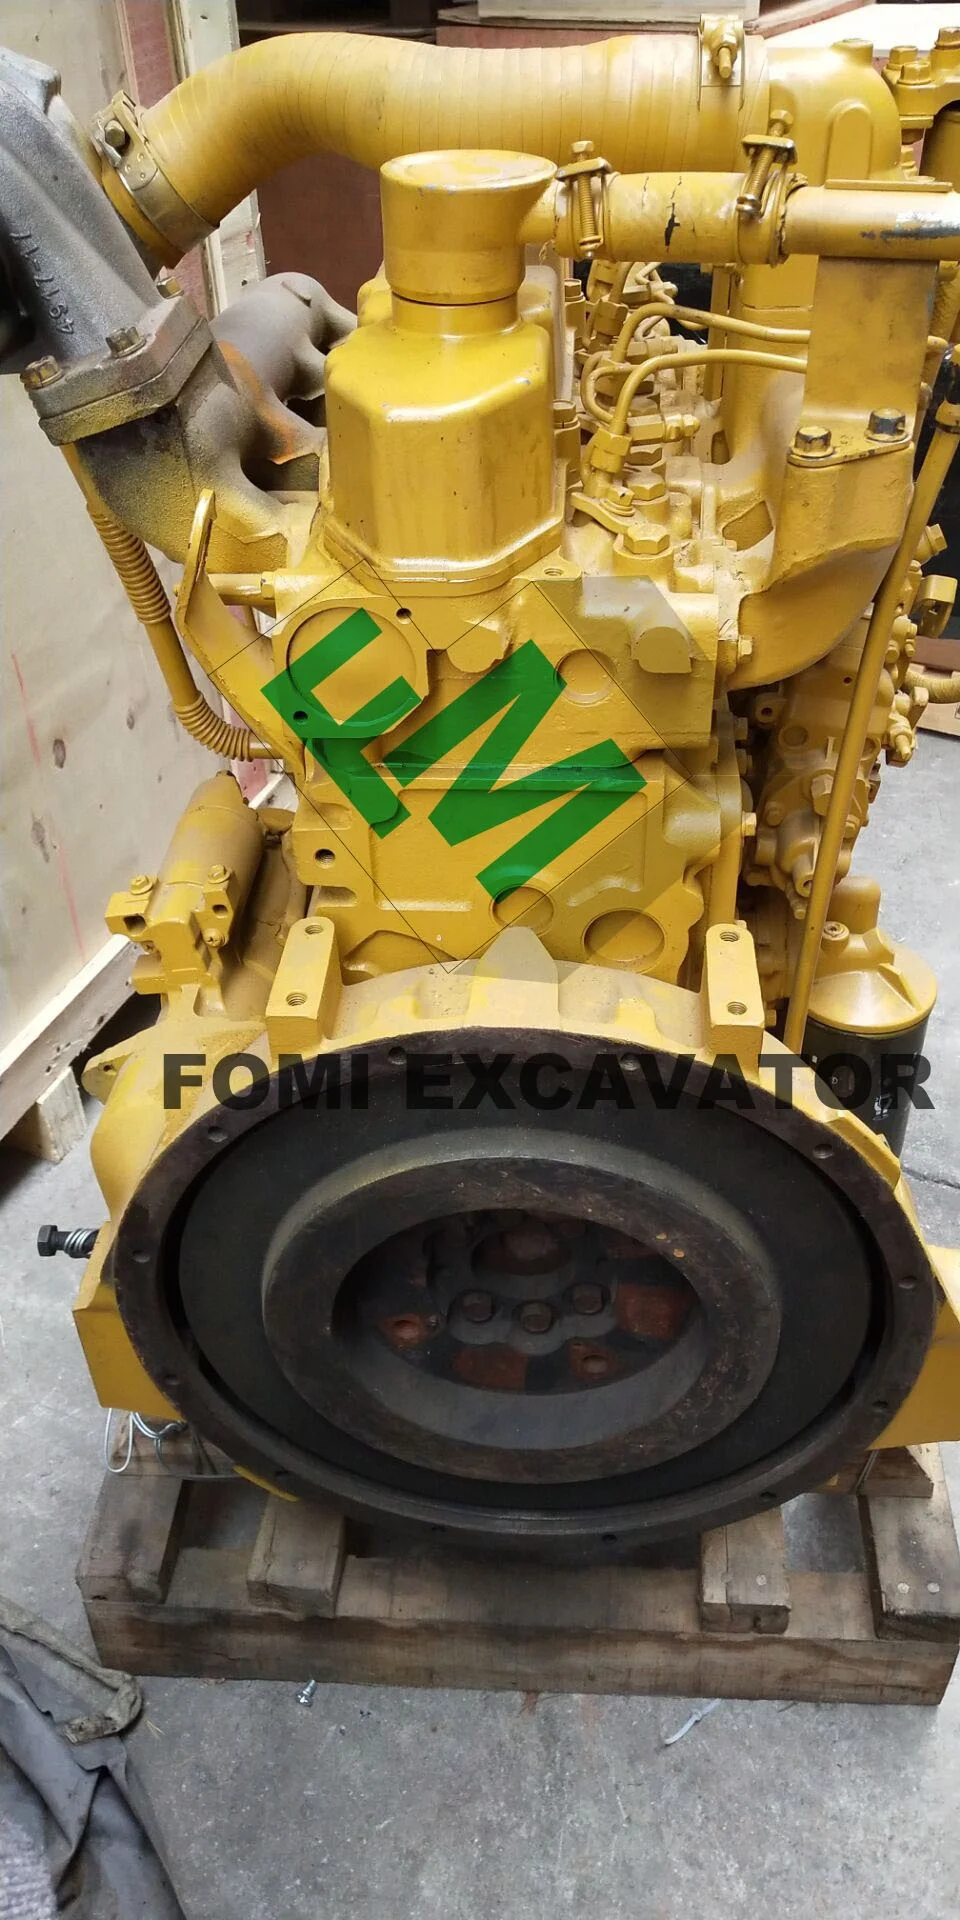 S4K Engine Assembly S4KT Engine Motor For Excavator Diesel